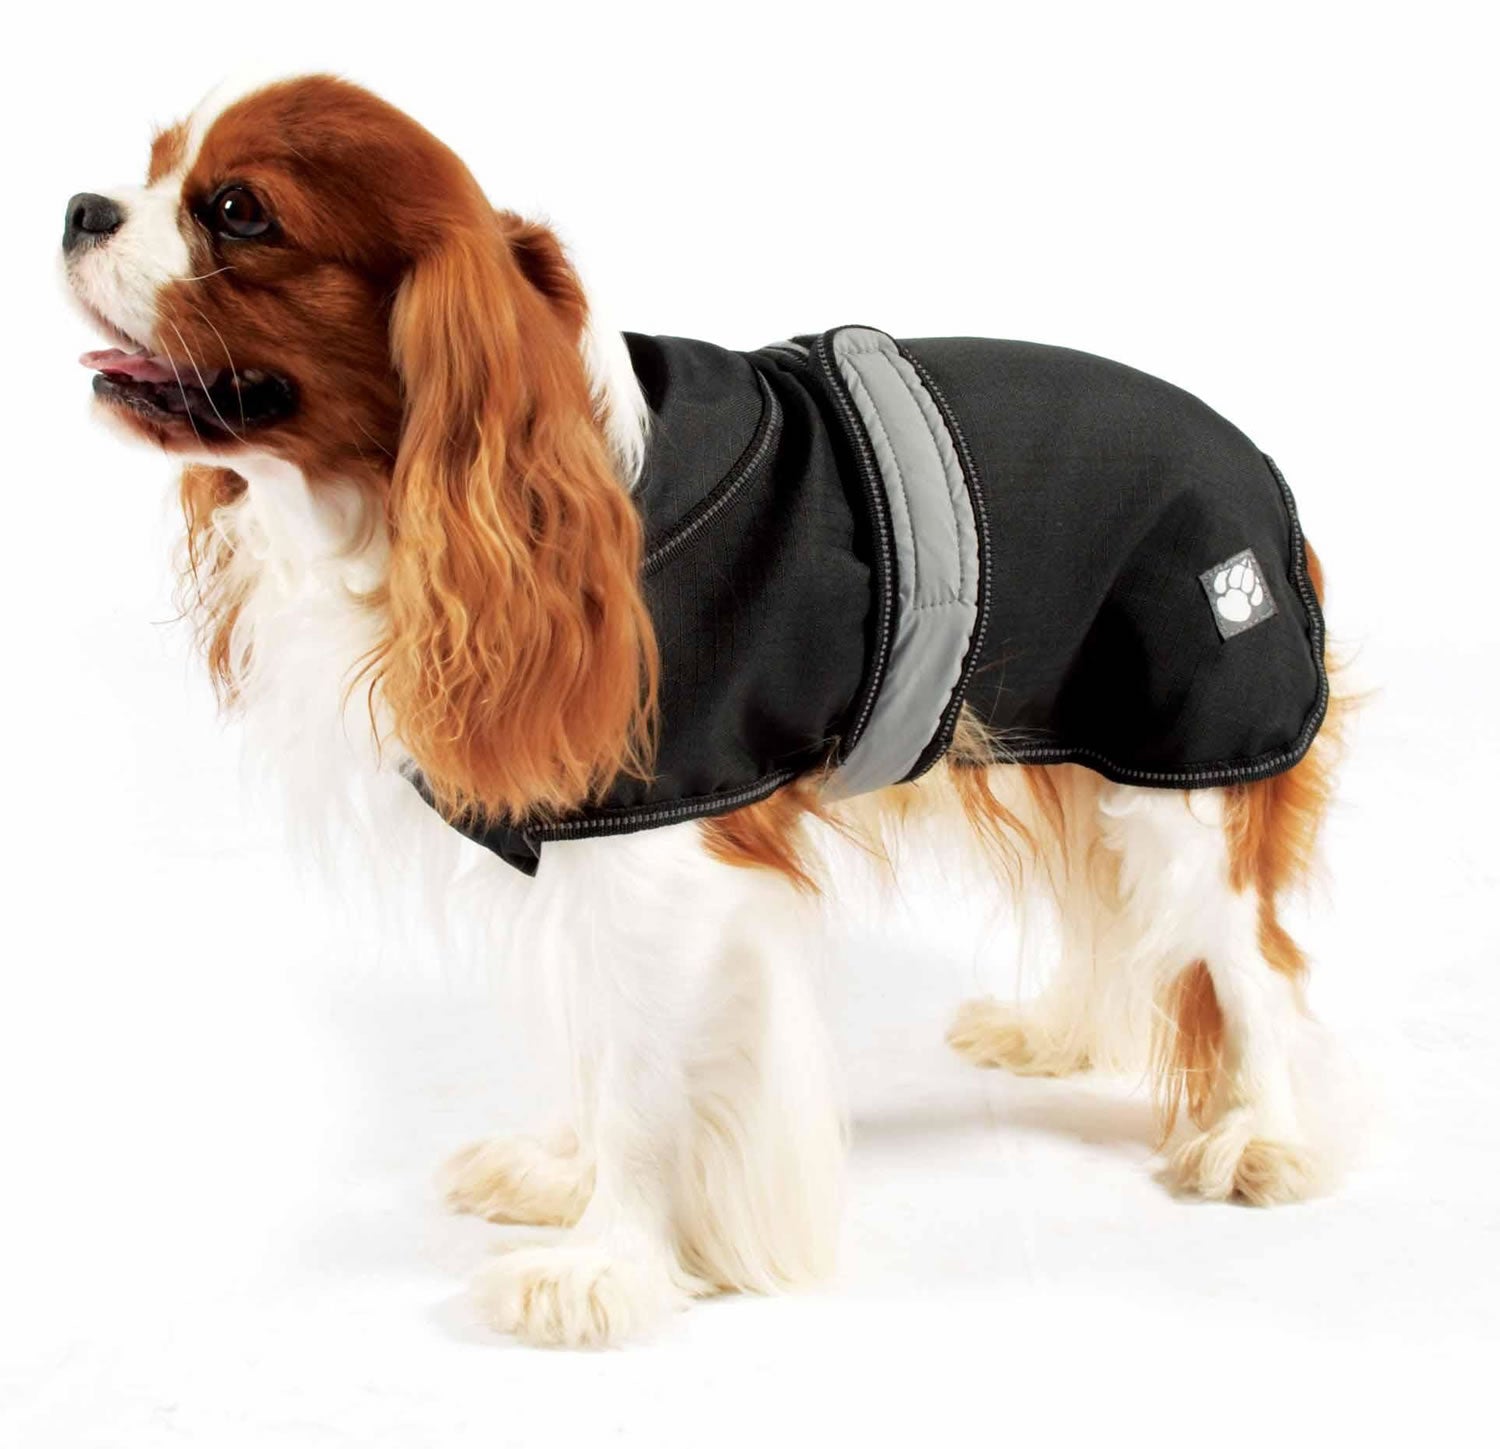 Danish Design Ultimate 2 In 1 Dog Coat in BlackDanish Design Ultimate 2 In 1 Dog Coat in Black 